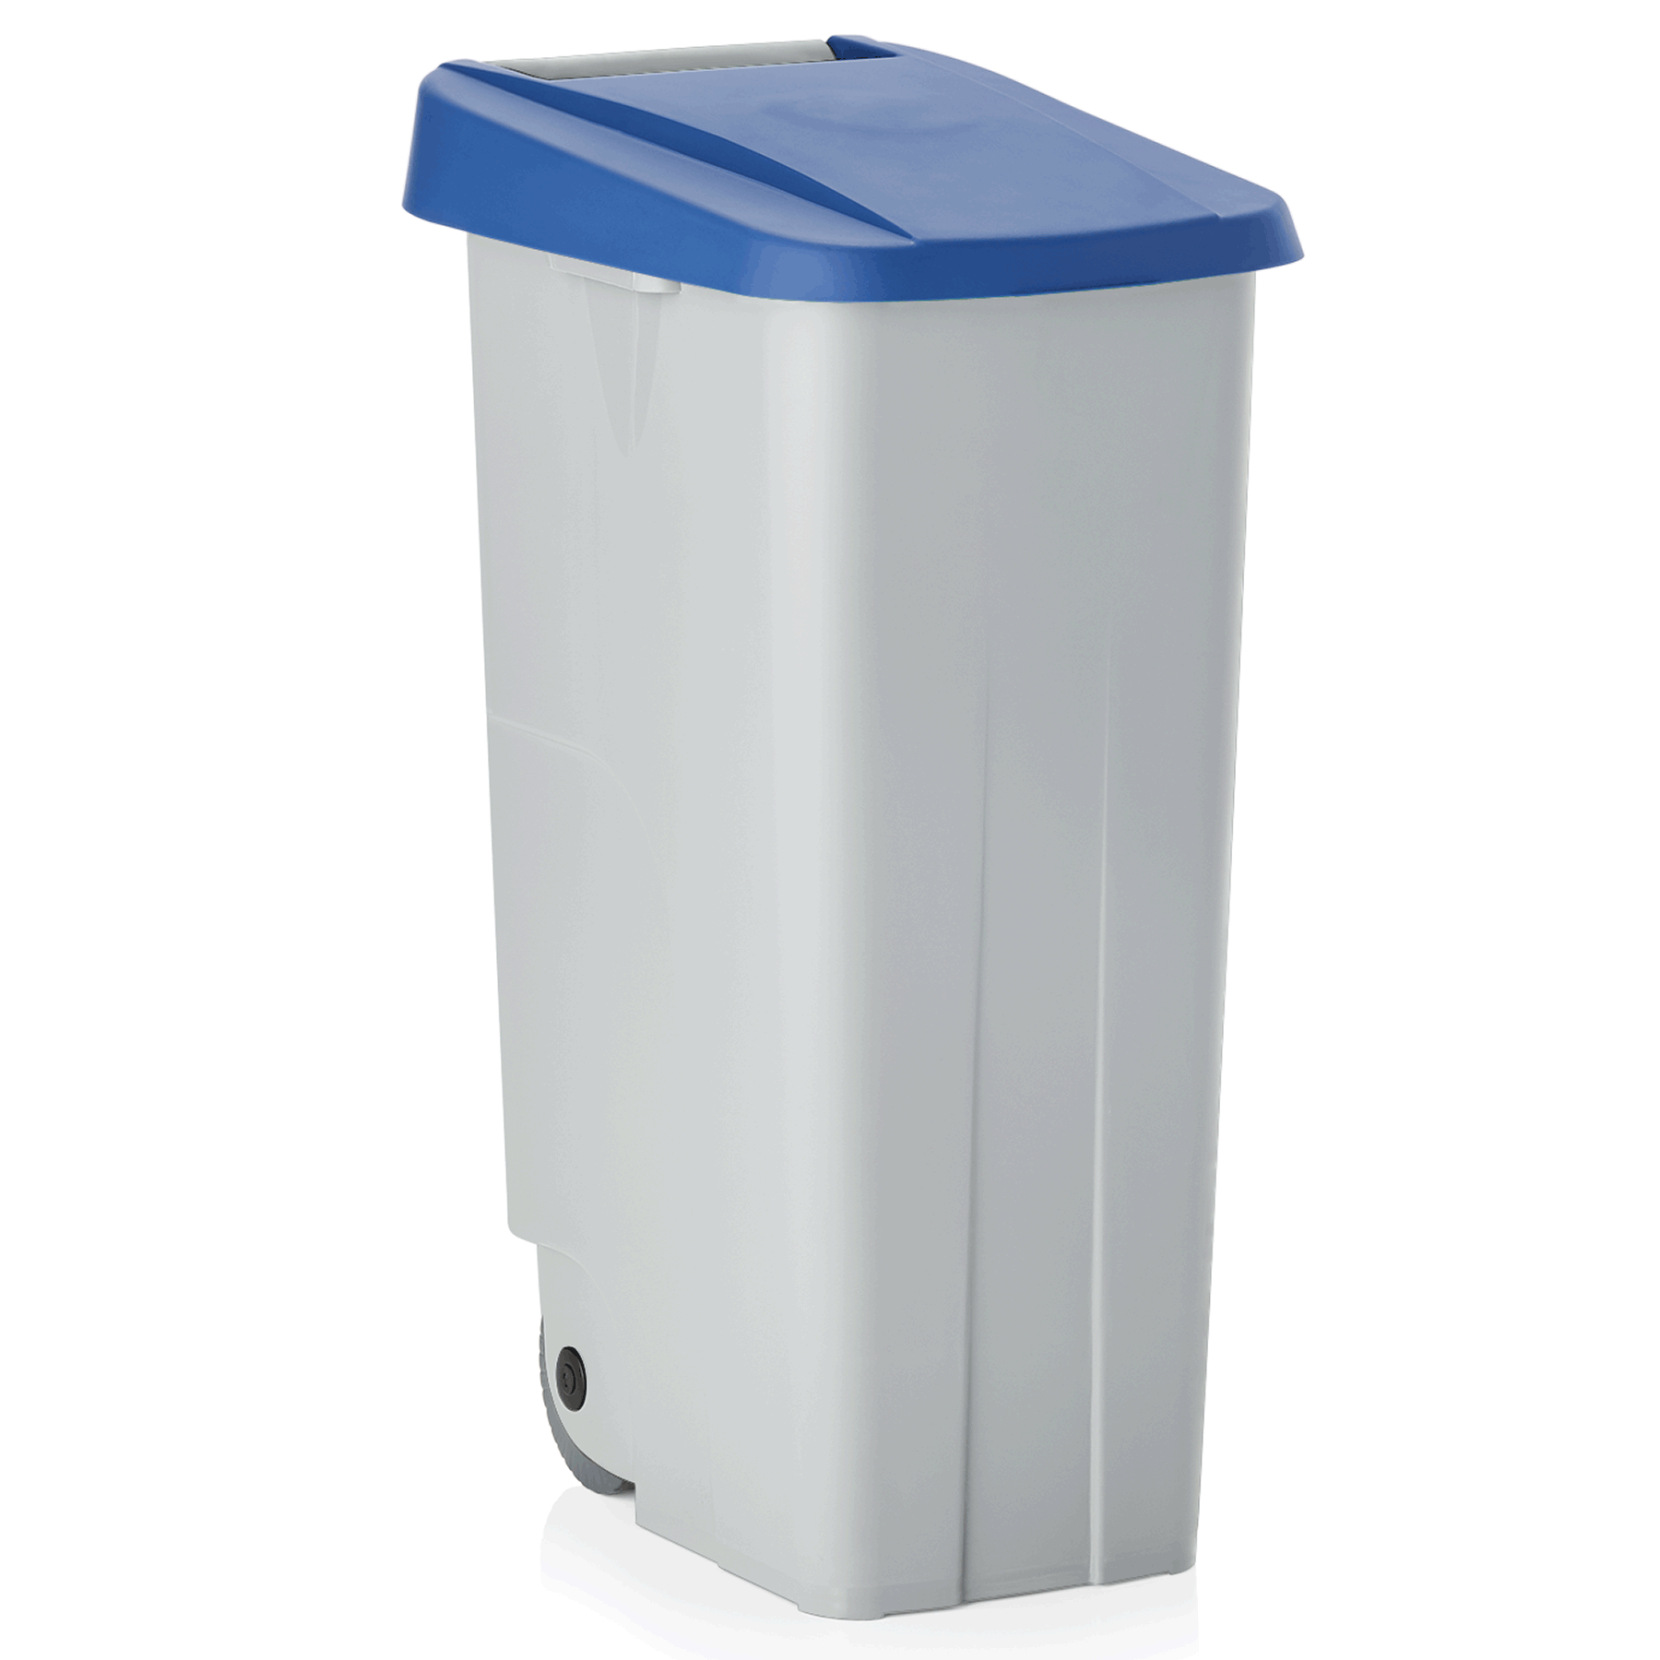 Abfallbehälter mit blauem Deckel, 110 ltr., Polypropylen